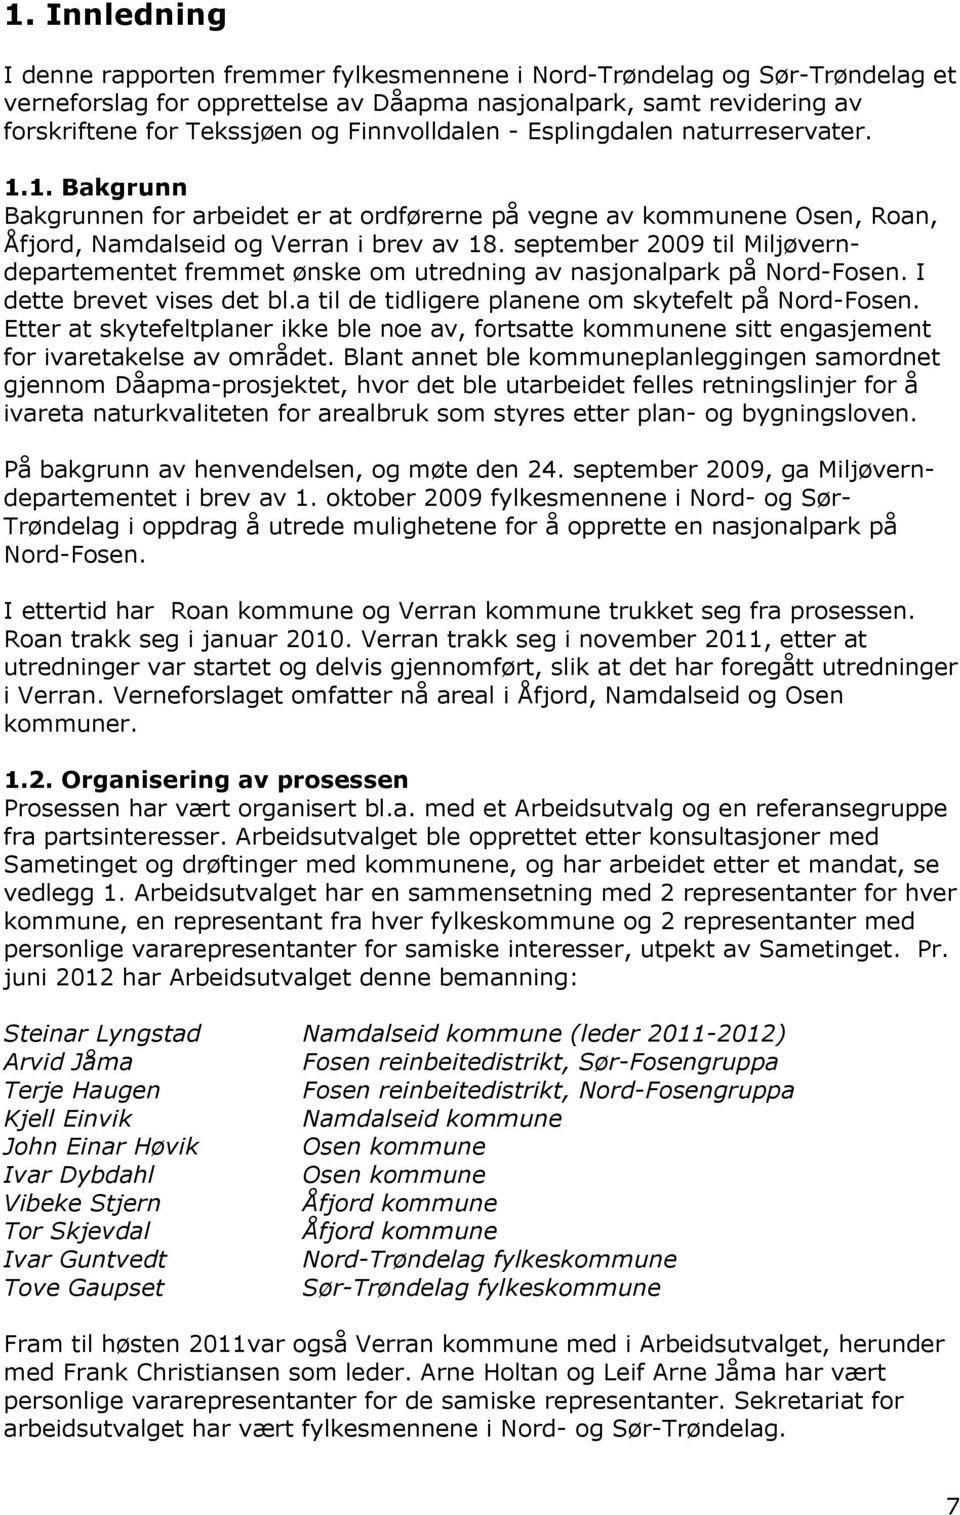 september 2009 til Miljøverndepartementet fremmet ønske om utredning av nasjonalpark på Nord-Fosen. I dette brevet vises det bl.a til de tidligere planene om skytefelt på Nord-Fosen.